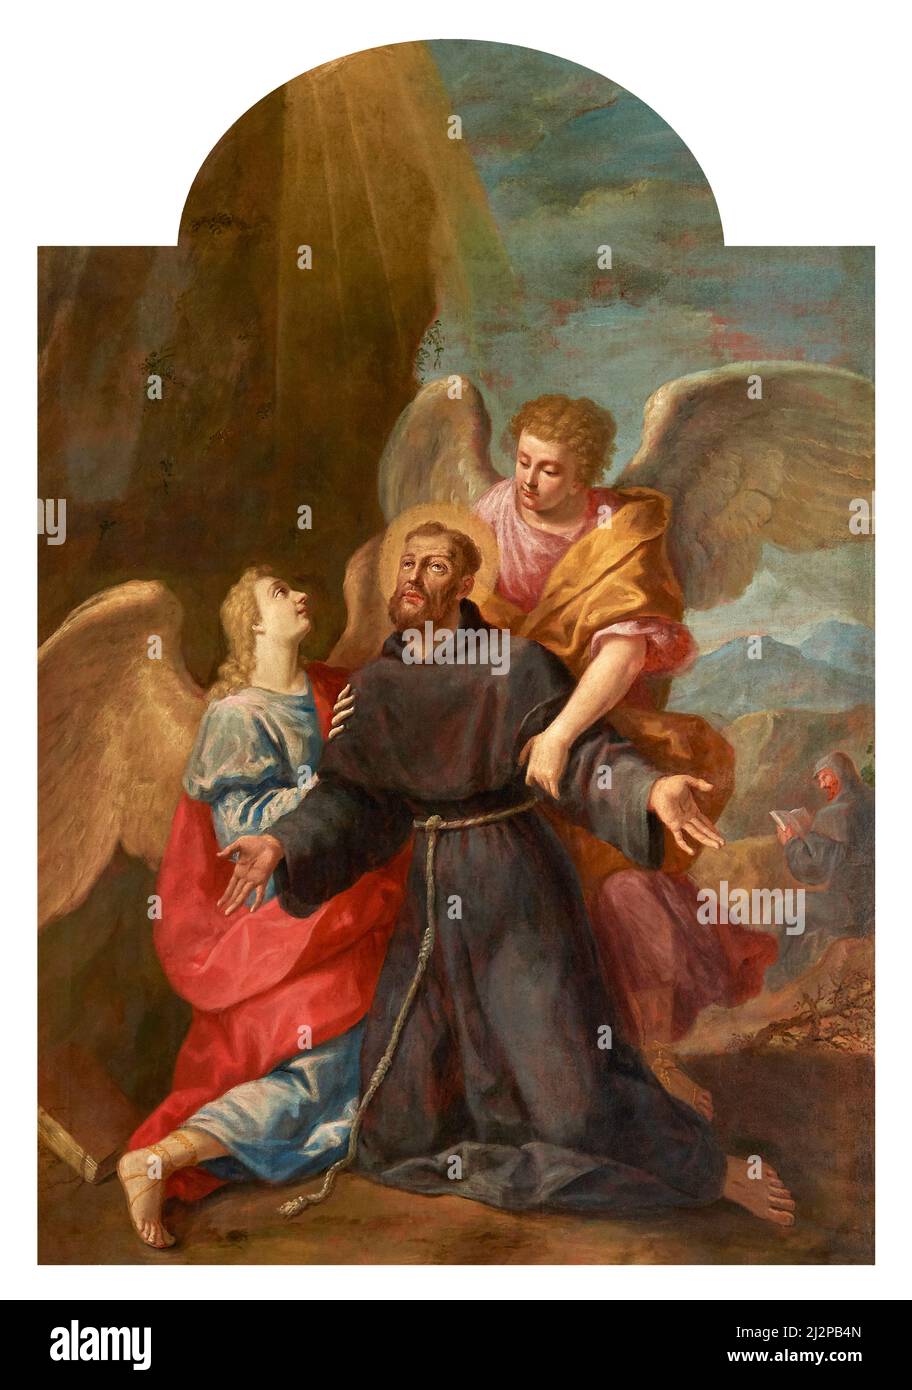 Saint François d'Assise en extase soutenu par deux anges - huile sur toile - G. Mazzoni - 18th centuri - Ferrara, Italie, église de Saint François d'AS Banque D'Images